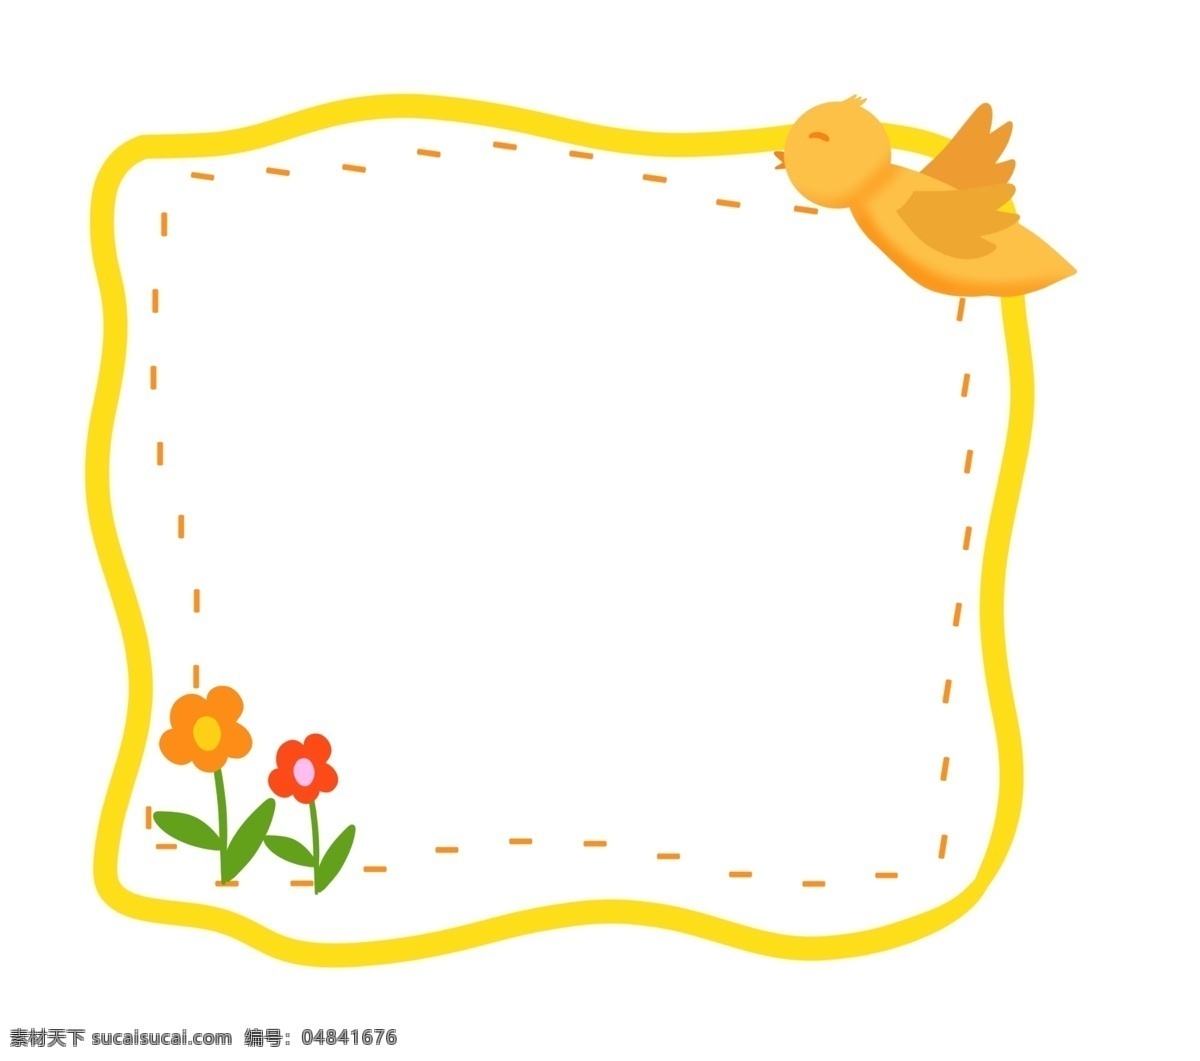 可爱 小鸟 花朵 边框 花朵边框 可爱花朵边框 黄色小鸟 卡通红色小花 小鸟花朵边框 黄色边框 黄色